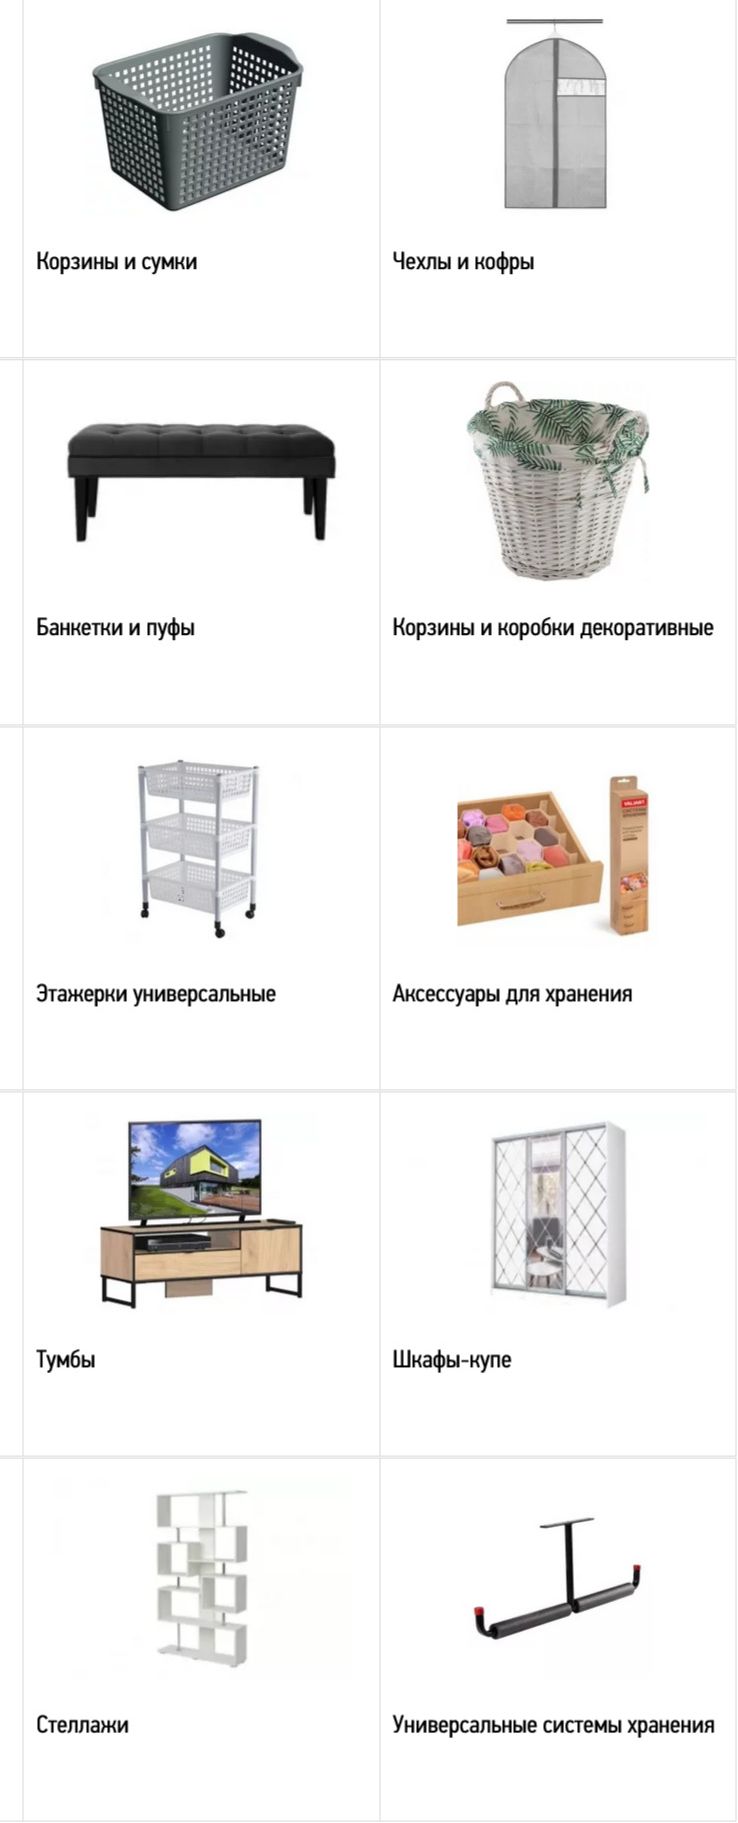 Хранение, мебель в Мегастрой  Витязево 